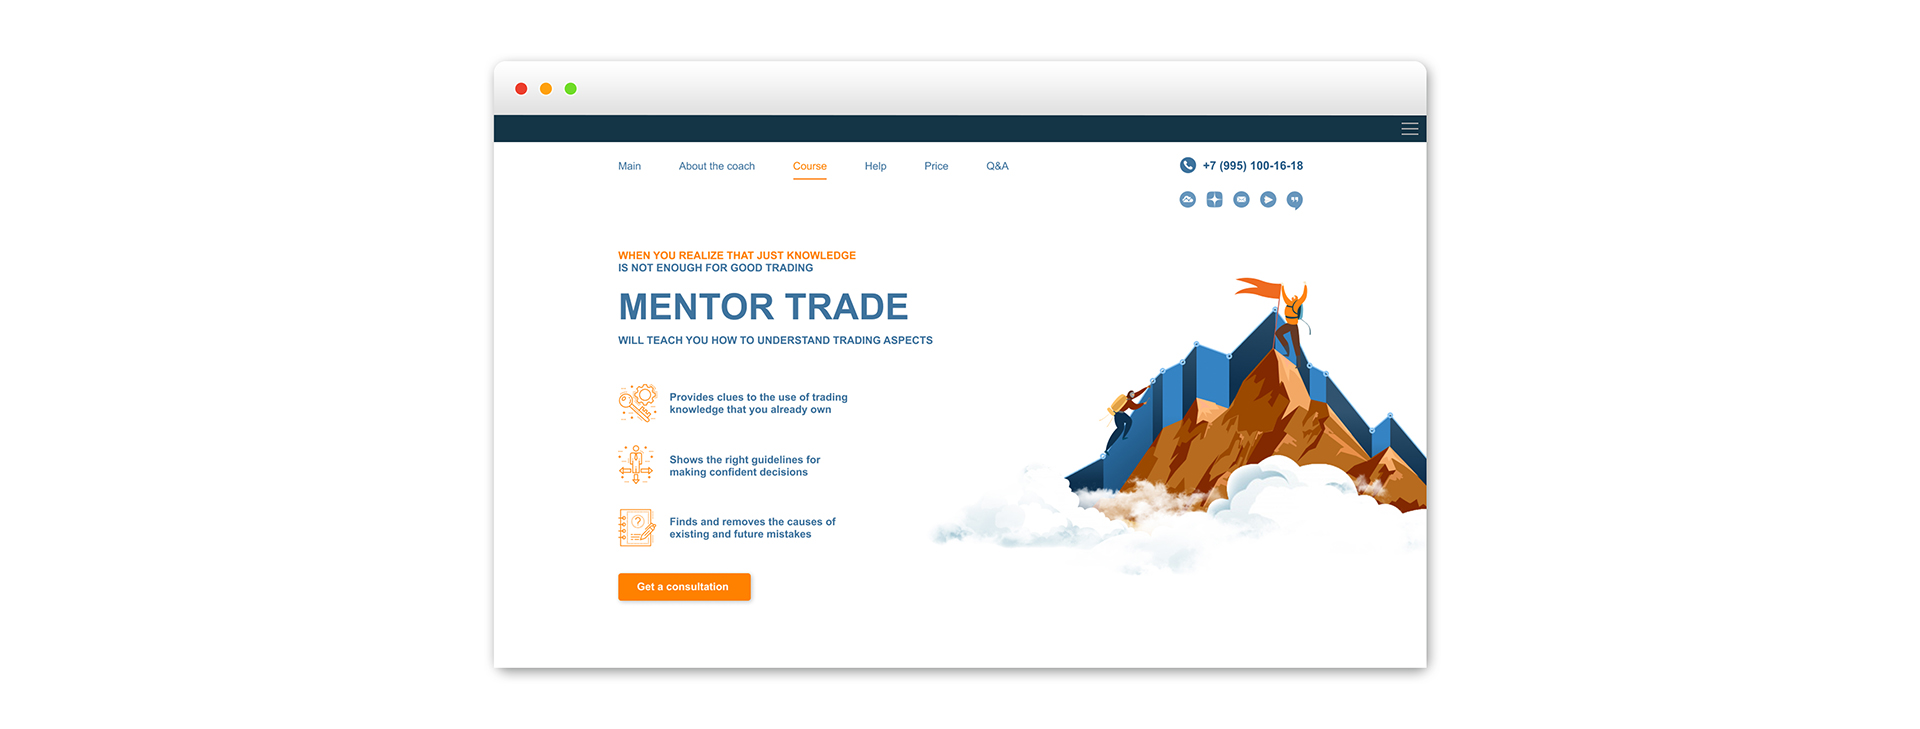 Mentor trade 2.jpg